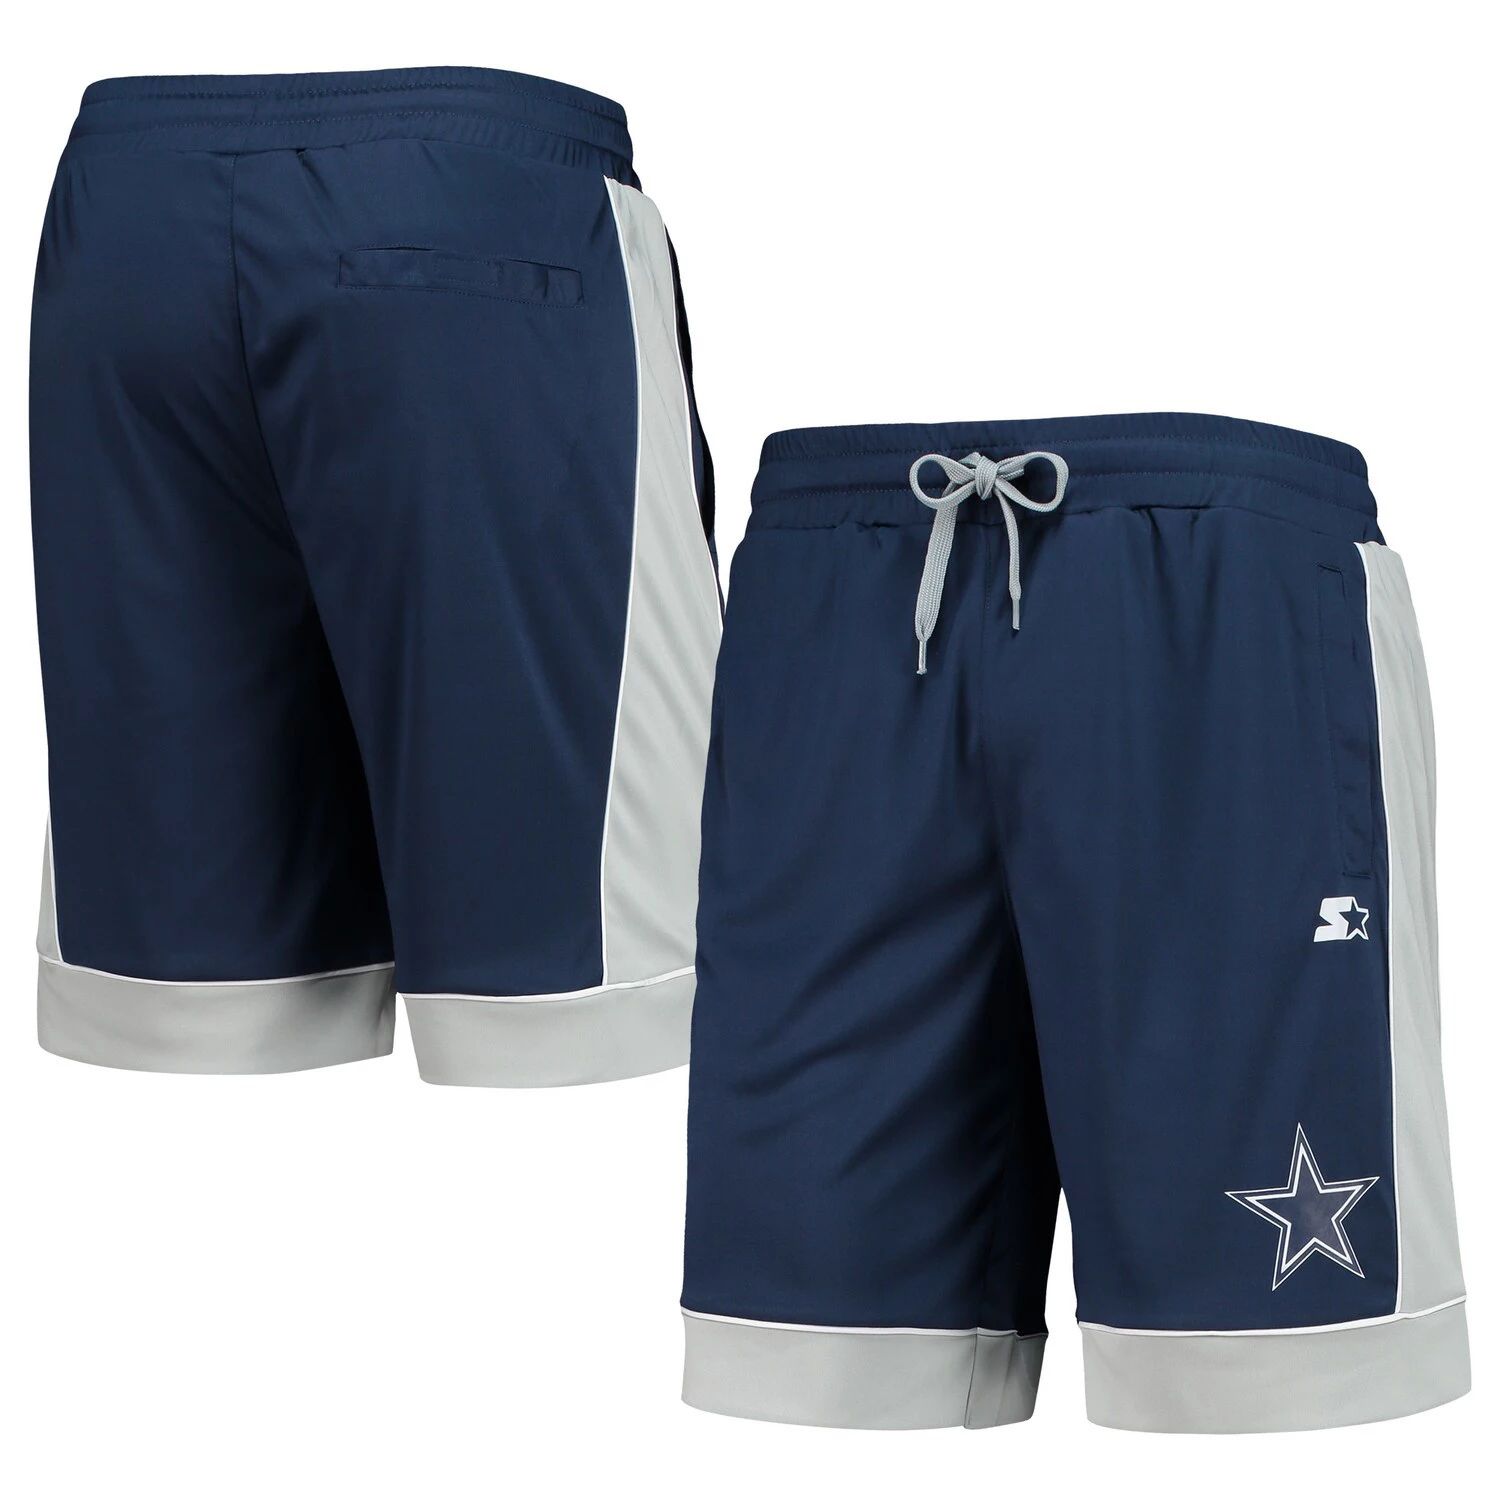 Мужские спортивные шорты от Carl Banks Темно-синие/серые модные шорты, любимые фанатами Dallas Cowboys G-III